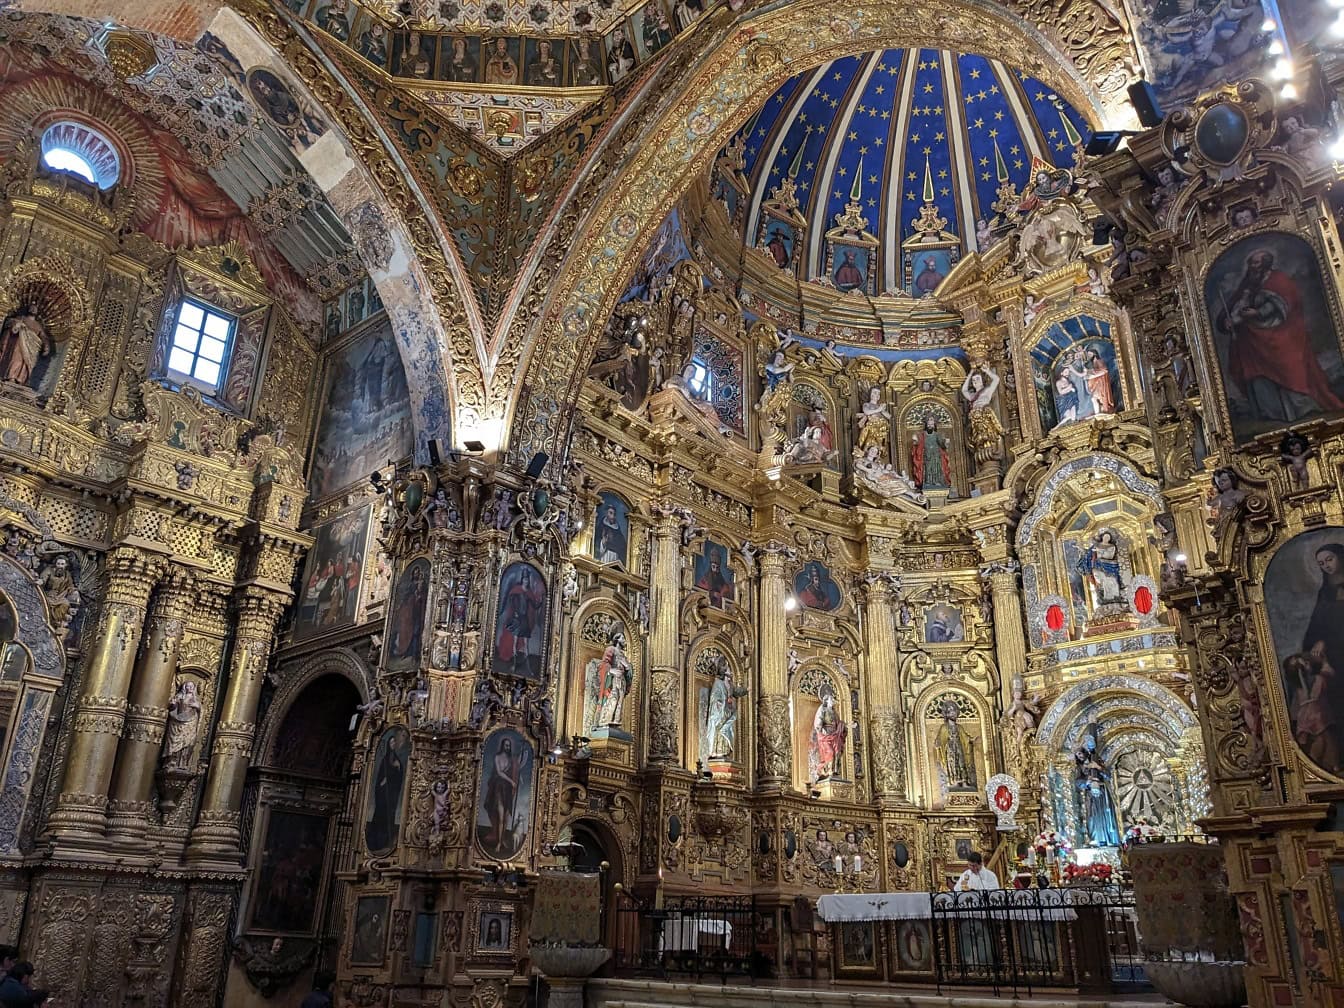 Verfraaid binnenland van de Rooms-katholieke Basiliek en het Klooster van San Francisco met goud-blauw verfraaid plafond